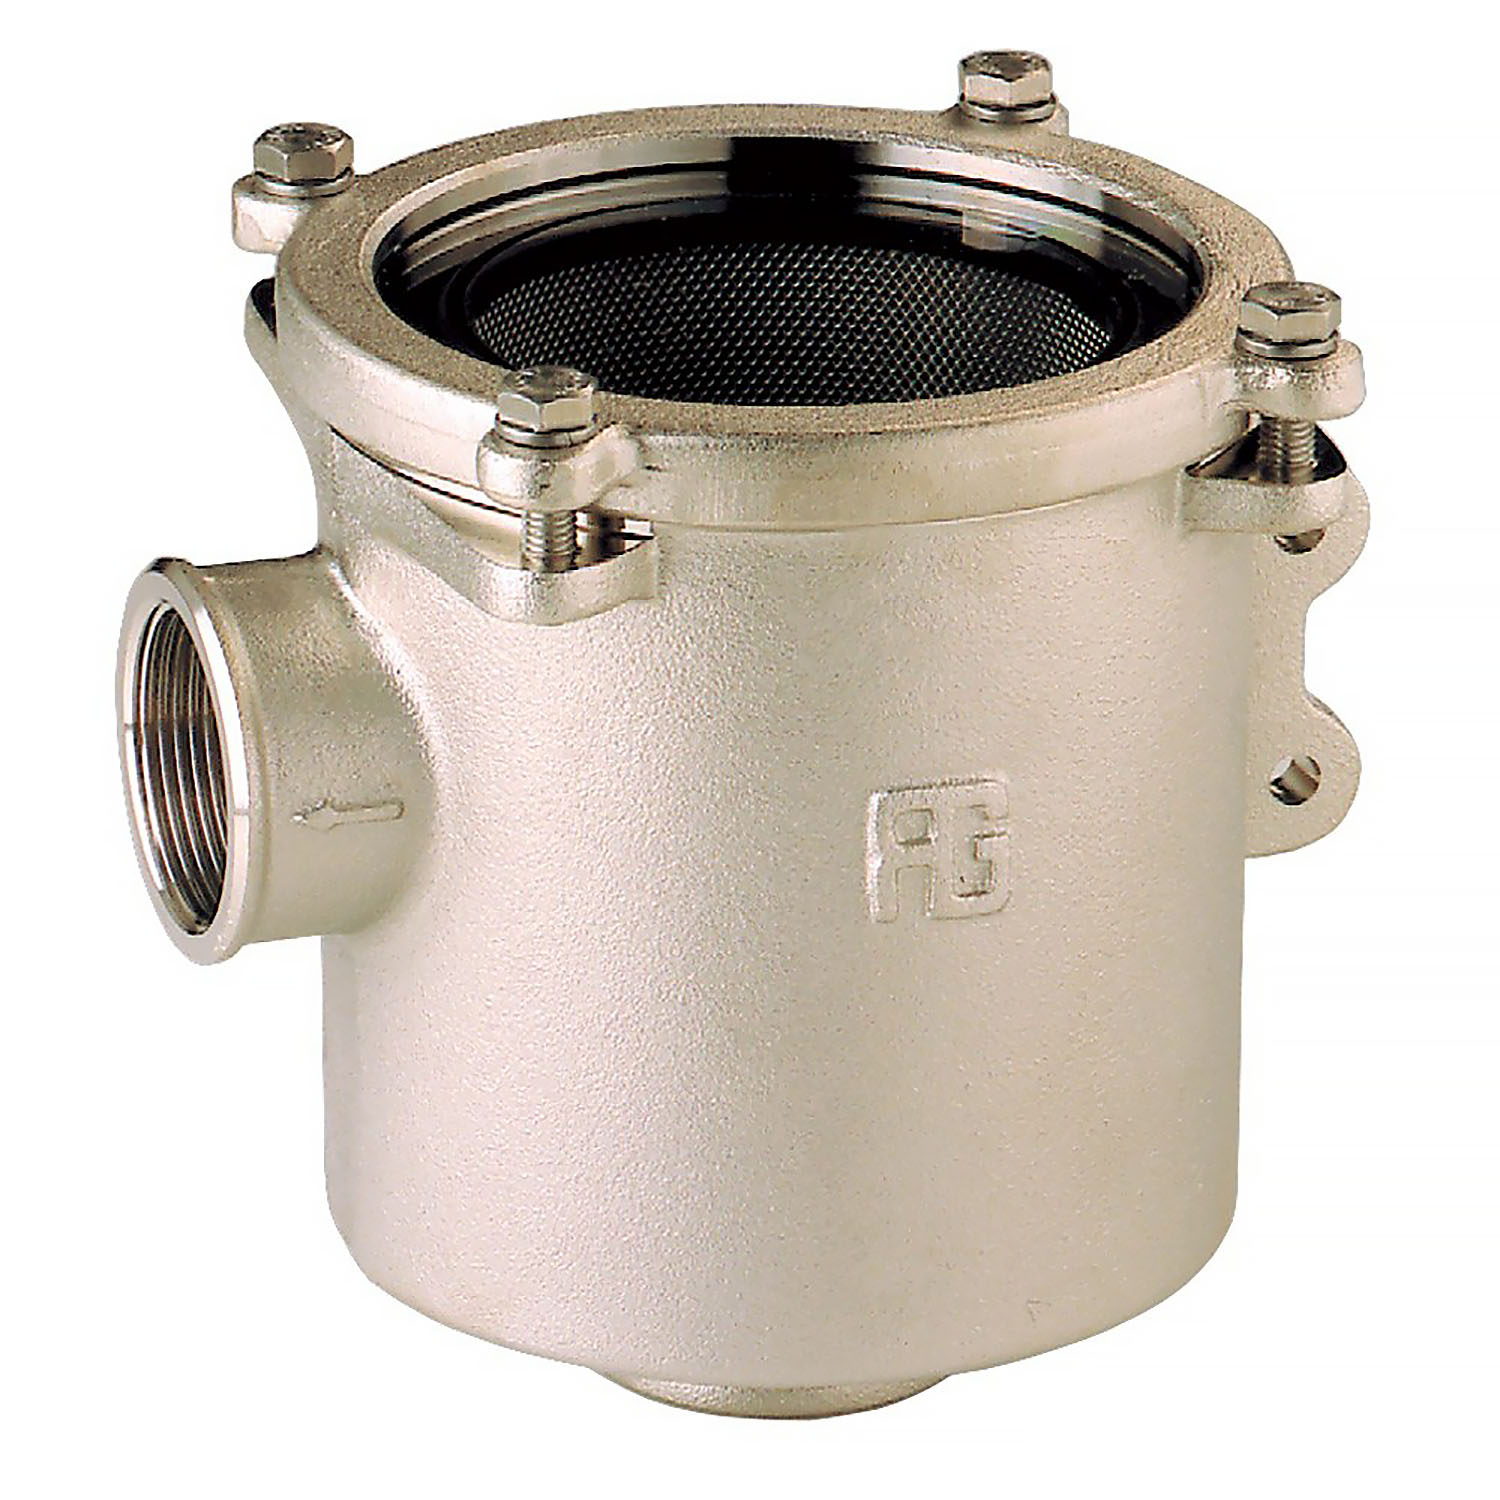 Фильтр водяной системы охлаждения двигателя Guidi Marine Ionio 1164 1164#220011 3